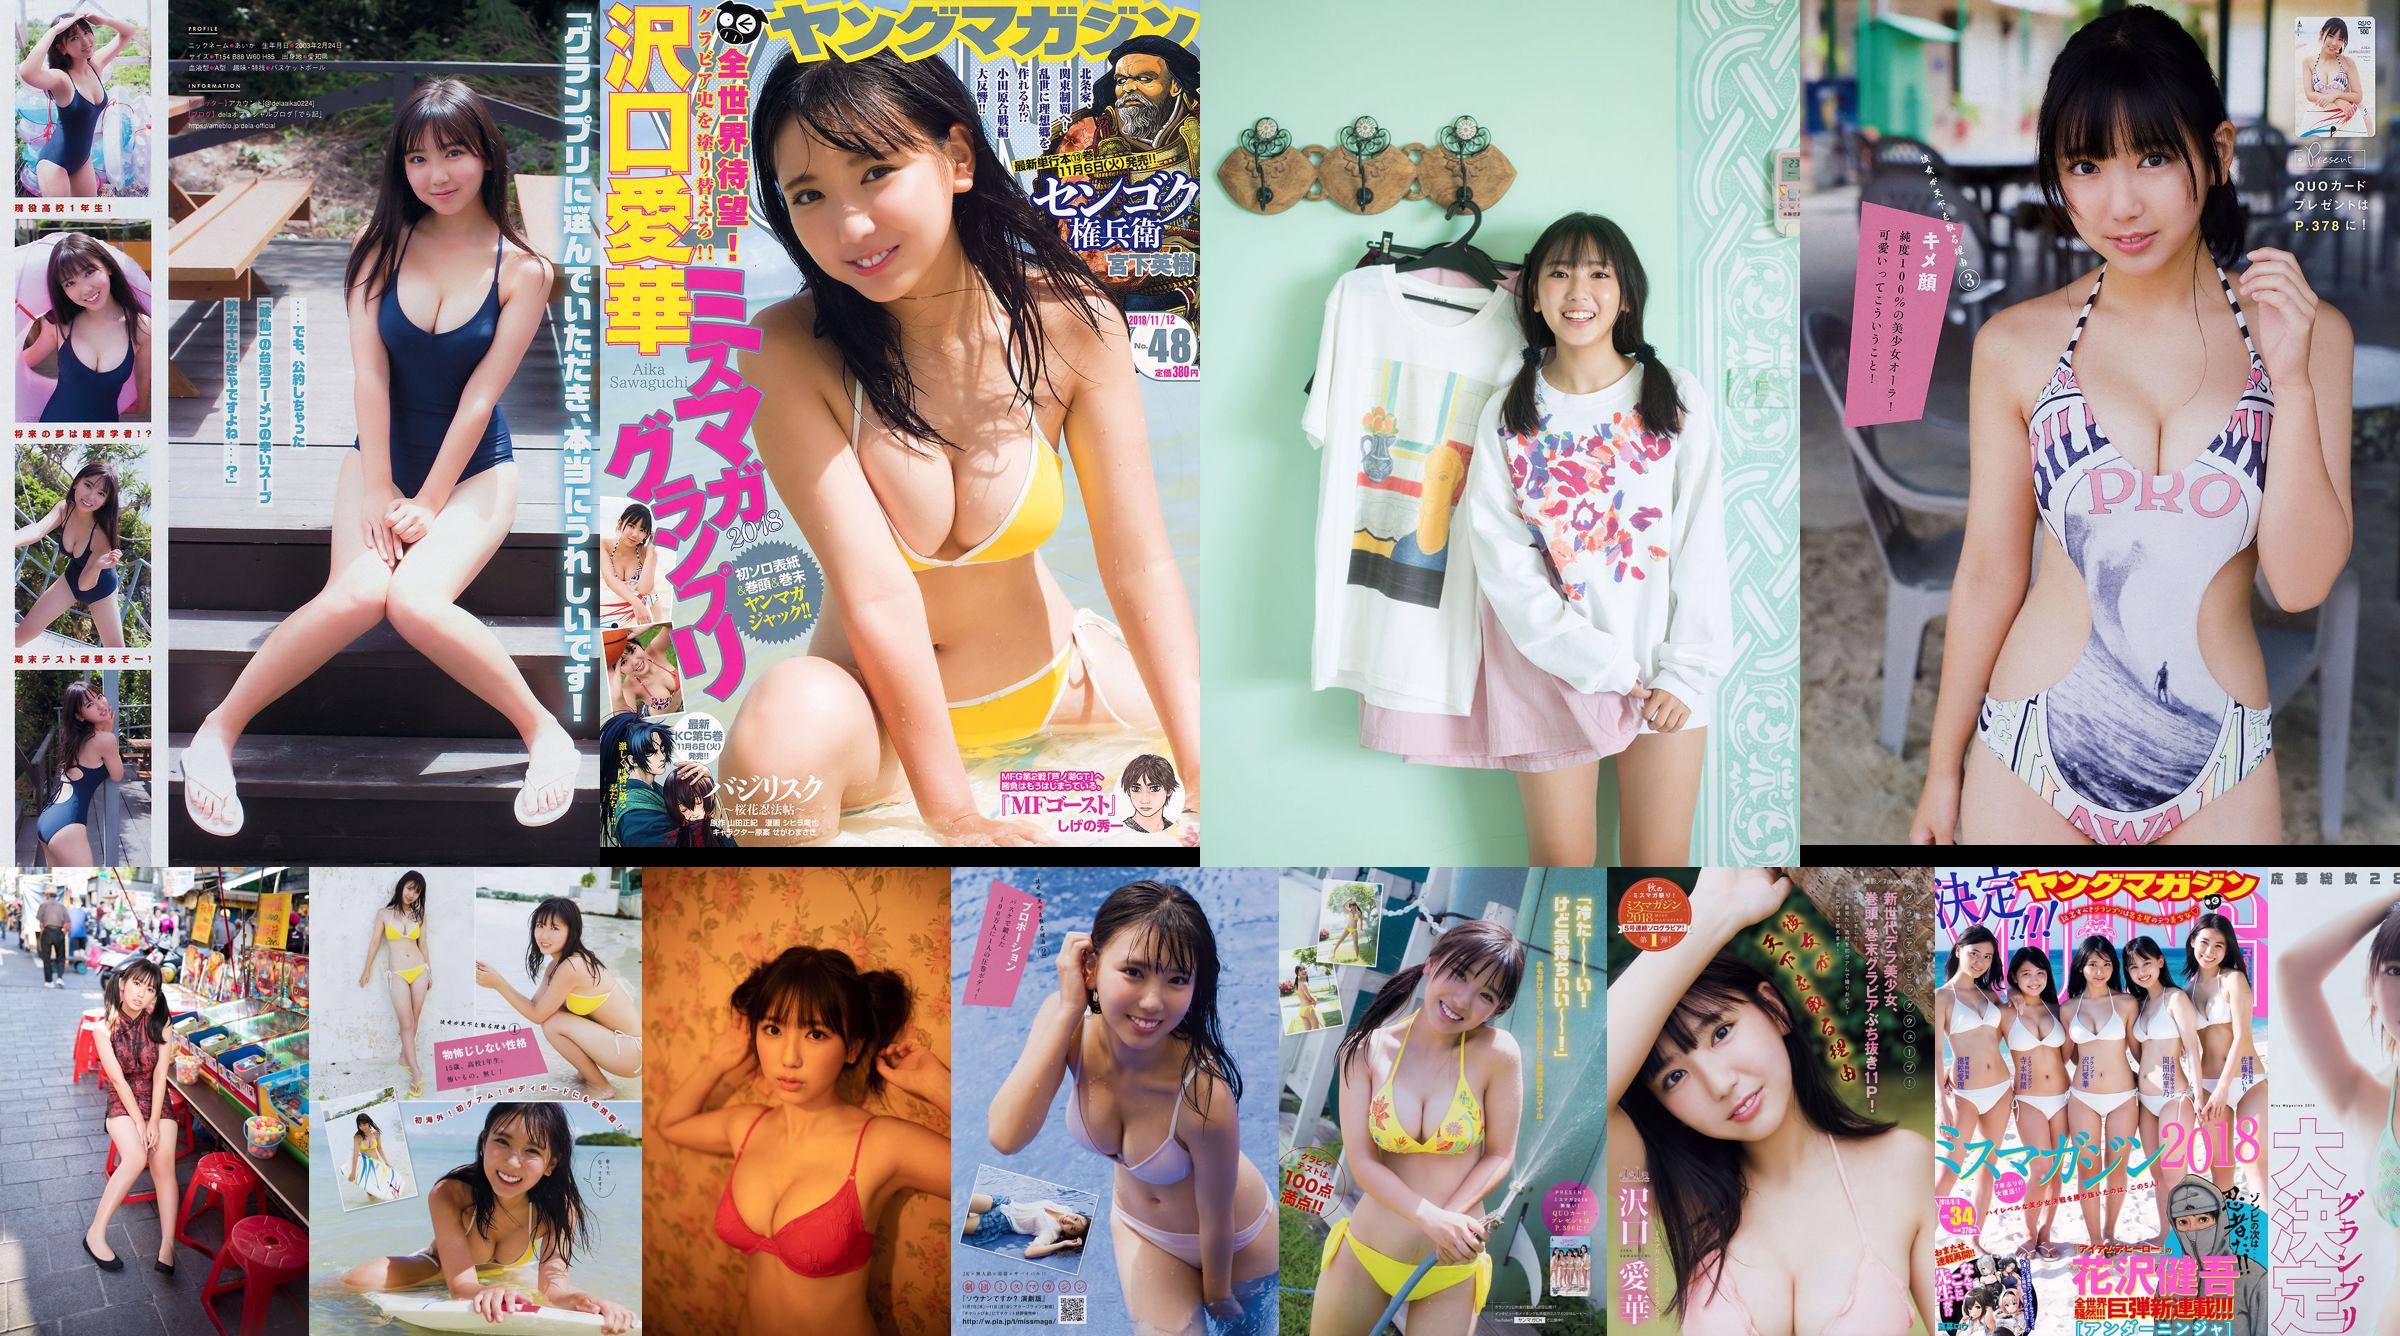 [Revista Young] Aika Sawaguchi Rio Teramoto Airi Ikematsu Yurino Okada Airi Sato 2018 Fotografia No.34 No.9a9d9e Página 1